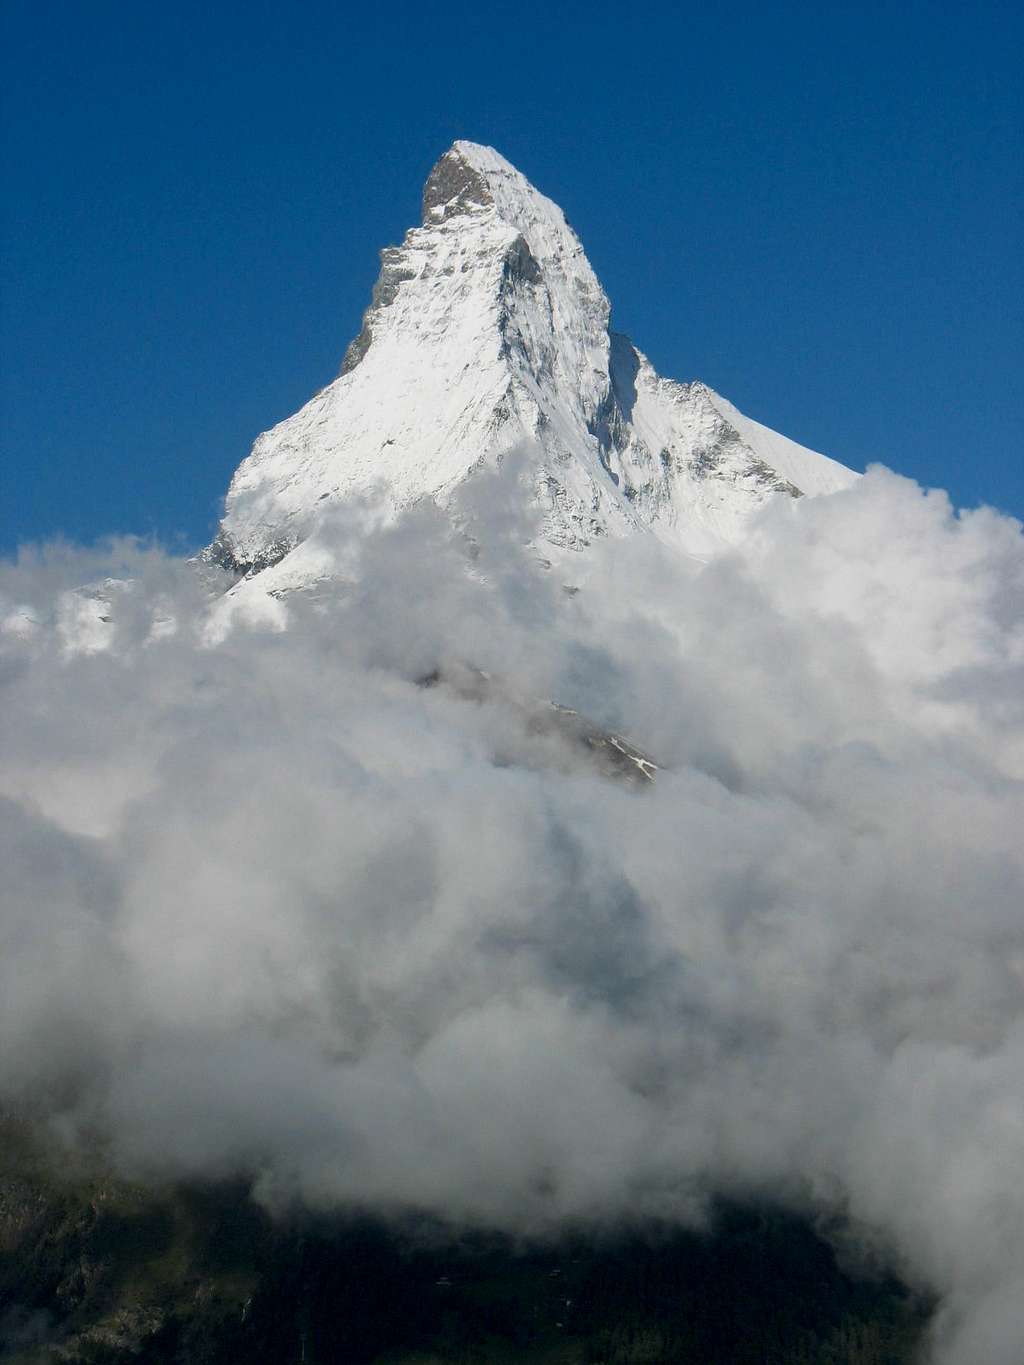 Matterhorn from Sunnegga